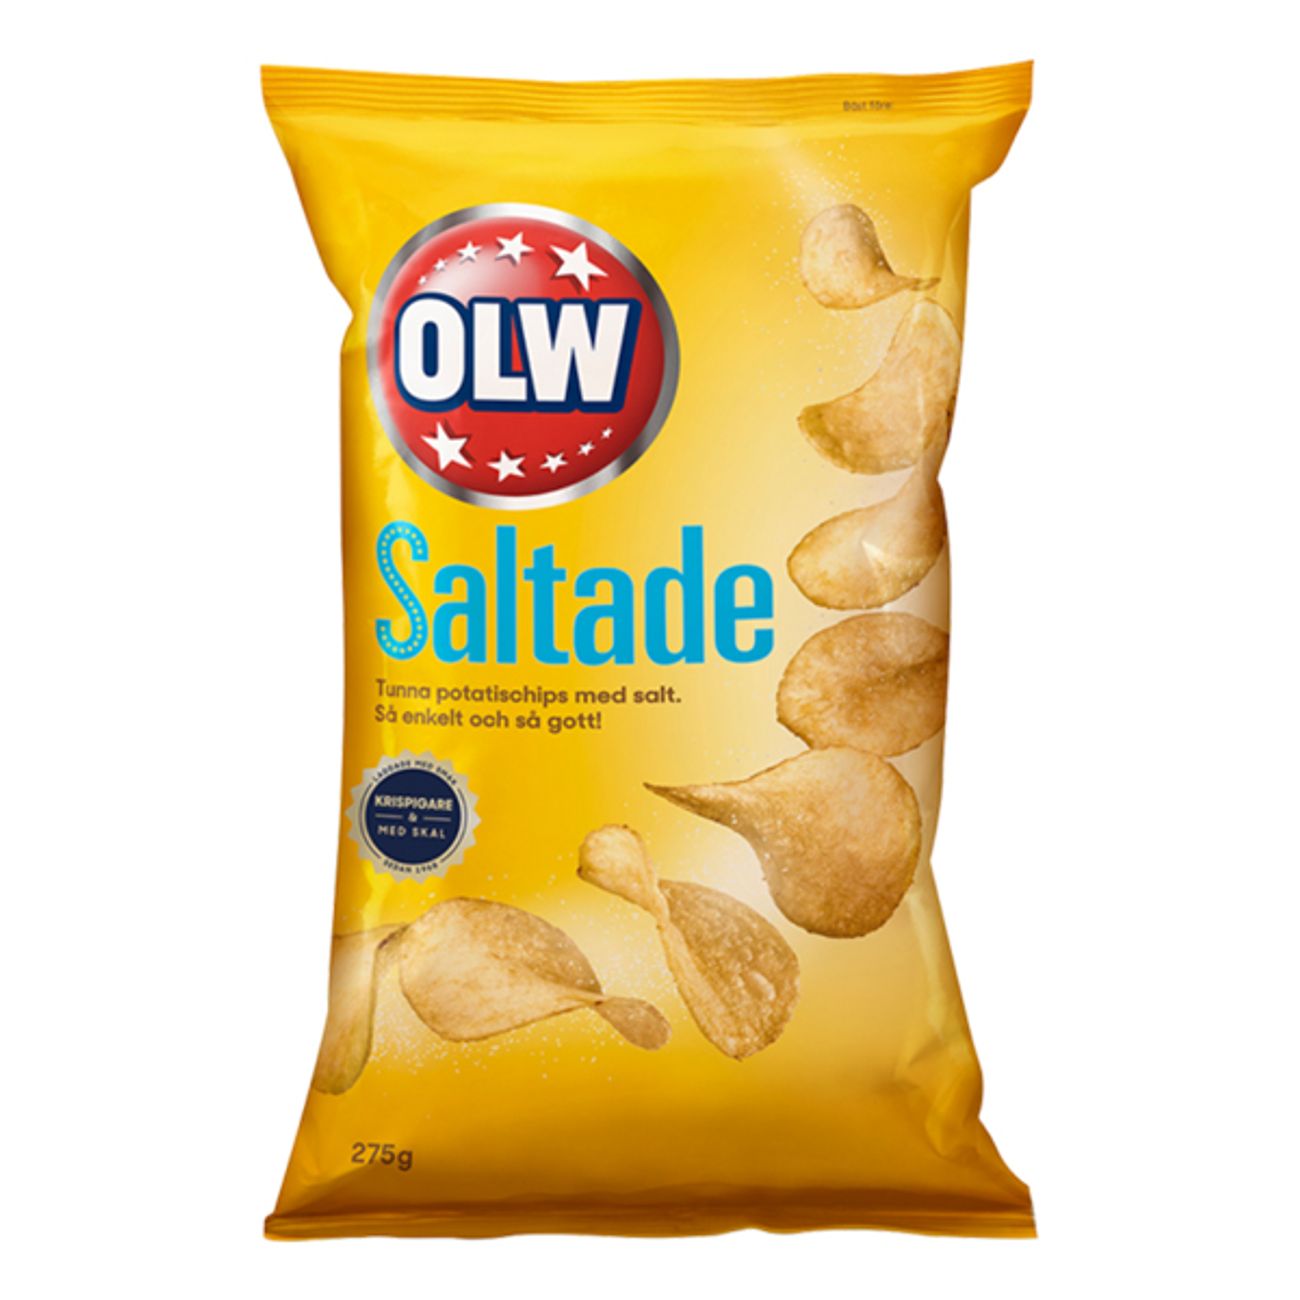 olw-saltade-chips2-2